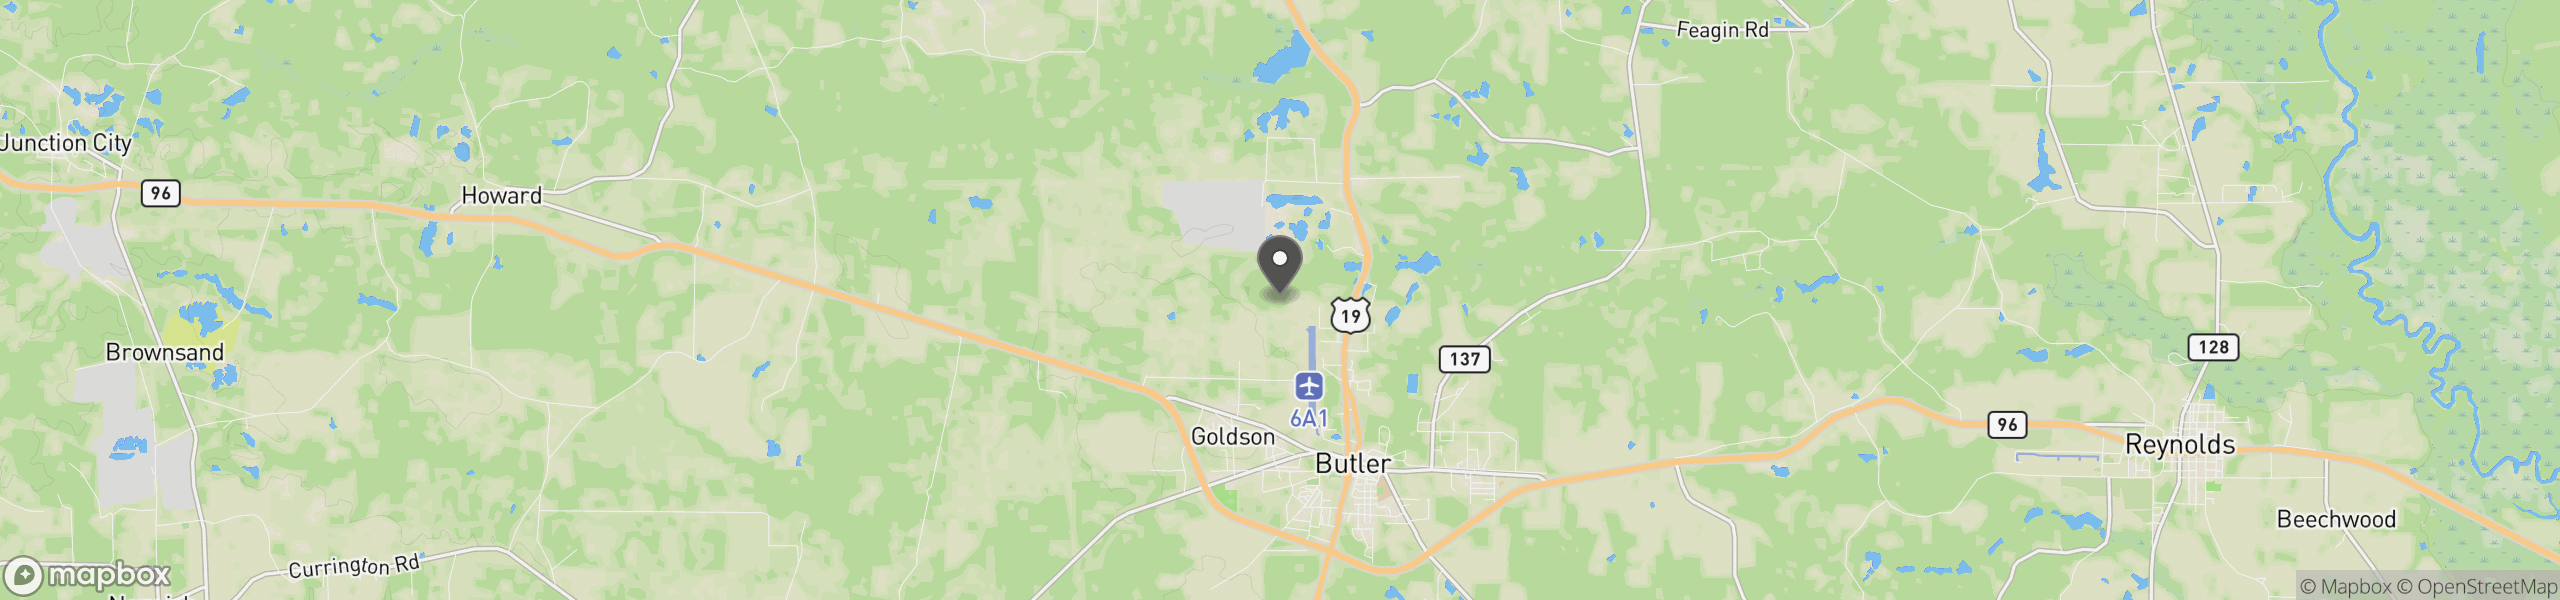 Butler, GA